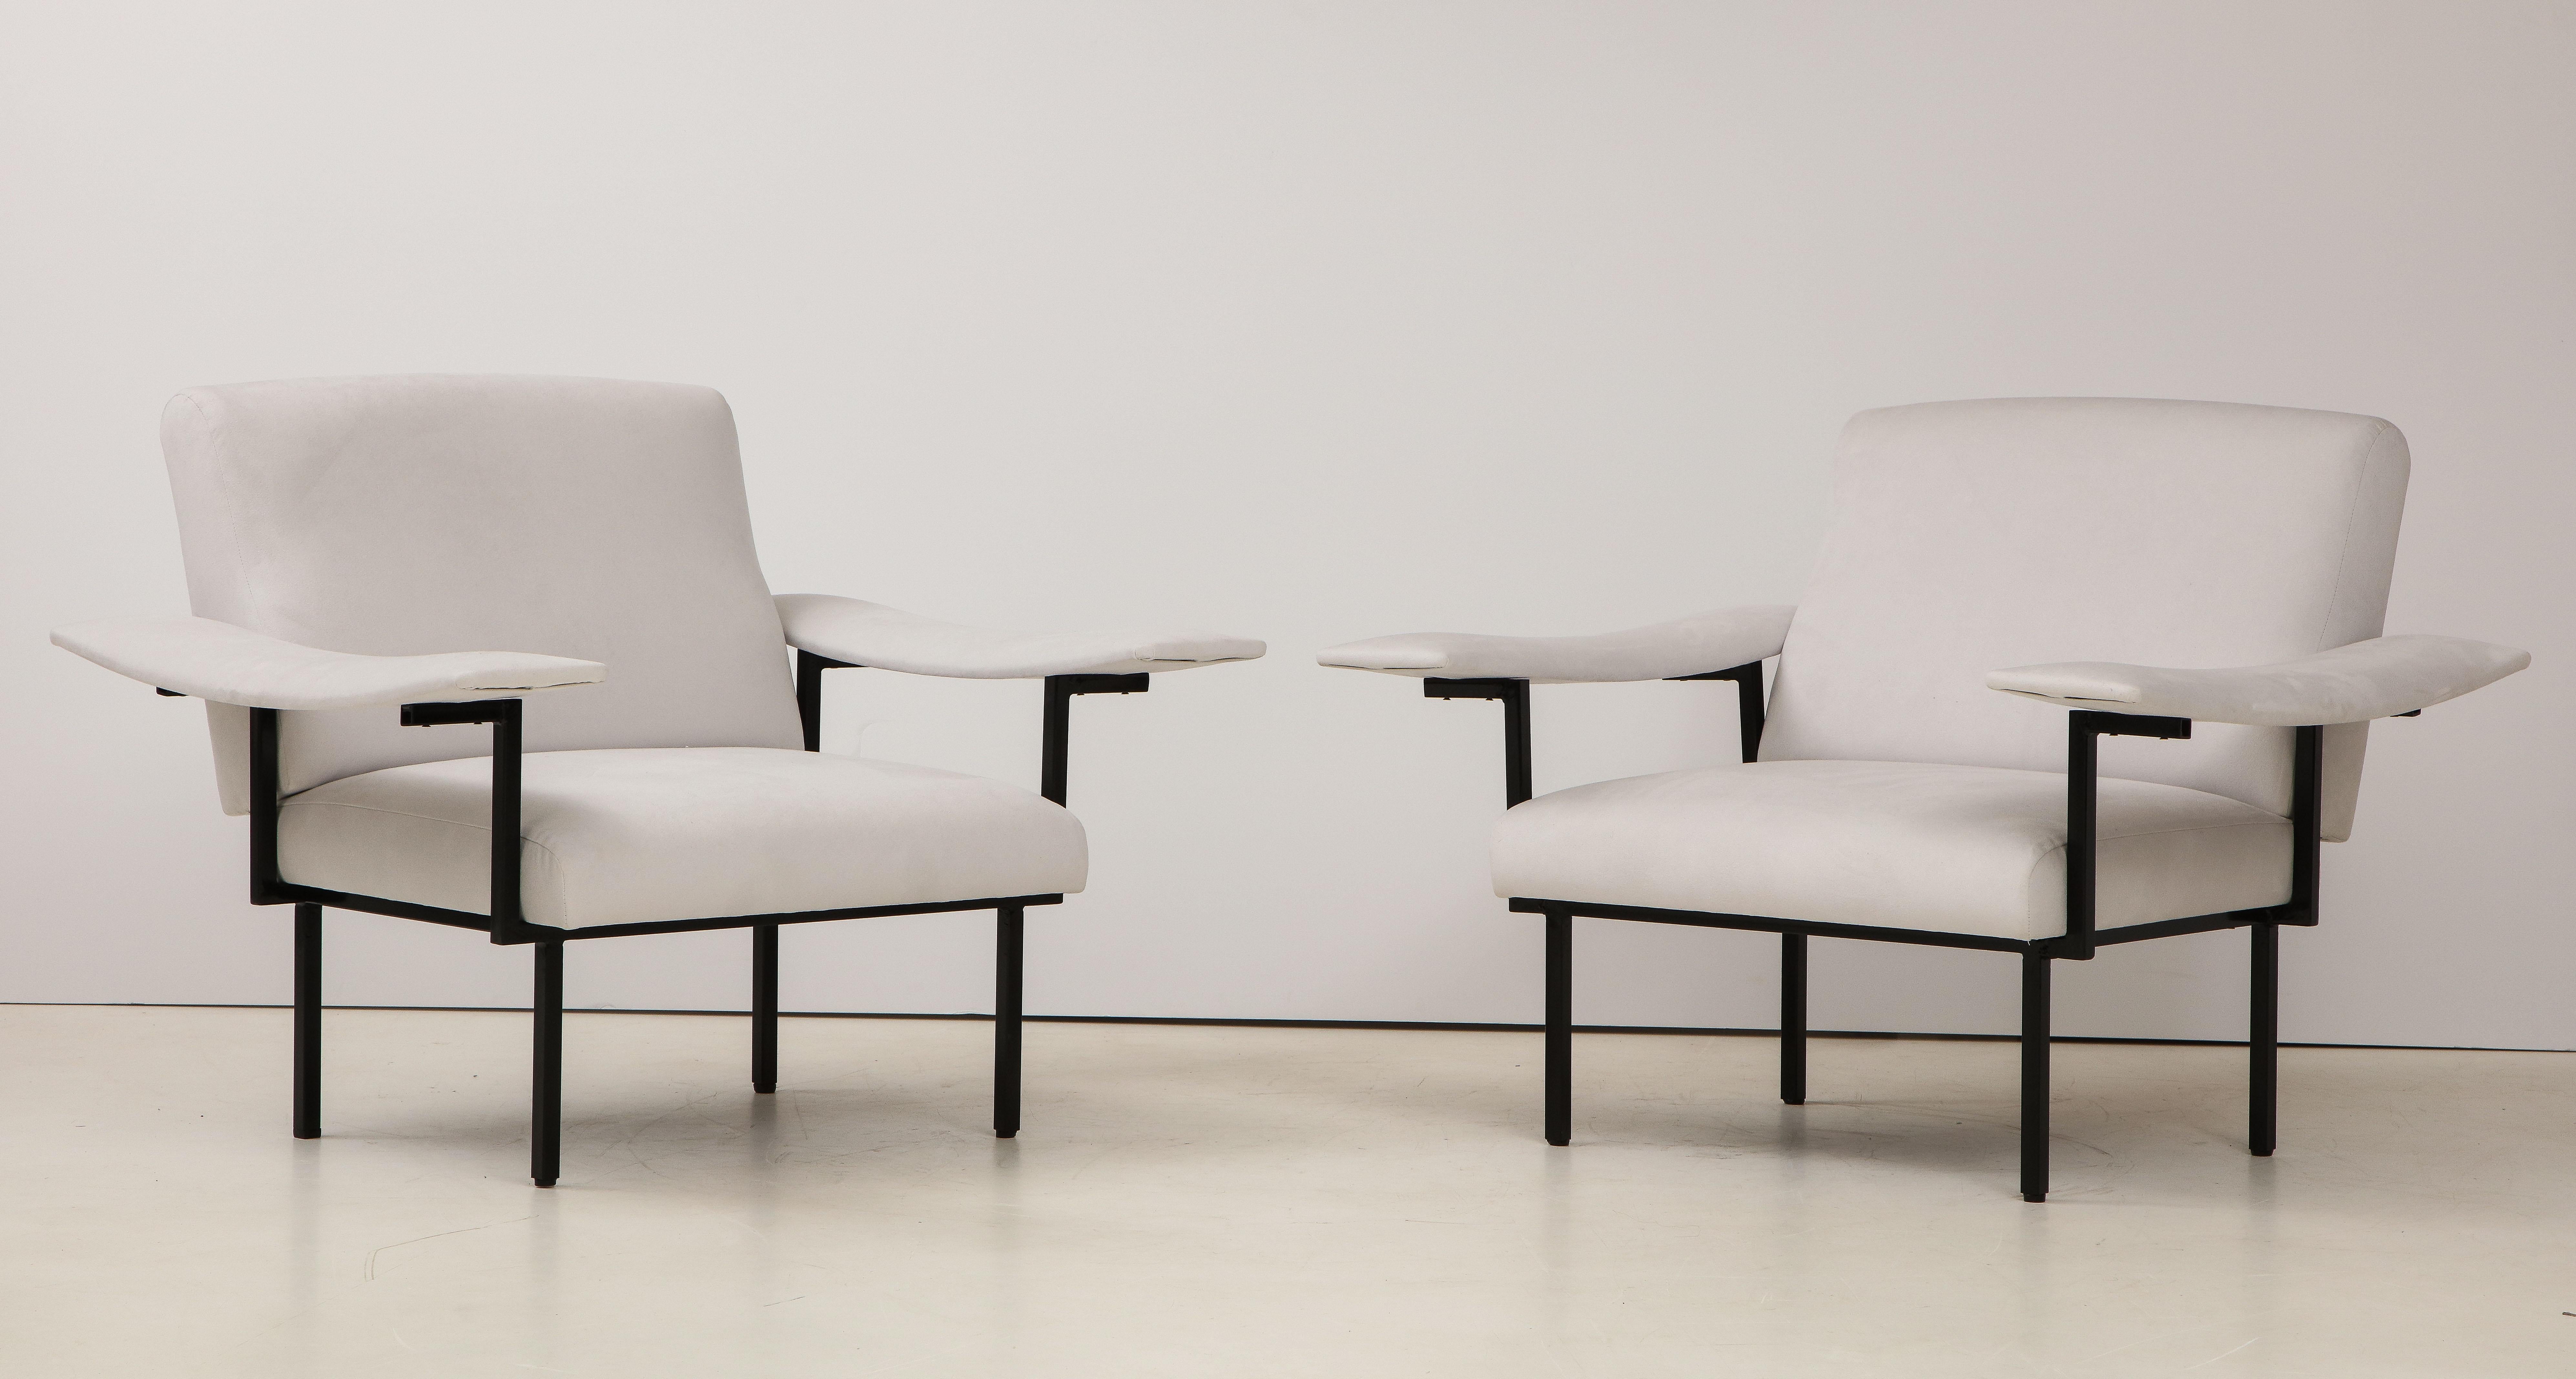 Ein elegantes und einzigartiges Paar moderner italienischer Sessel. Der Eisenrahmen trägt eine breite Sitzfläche, eine Rückenlehne und eine extra breite Armlehne, die sich bis zur Rückseite des Stuhls erstreckt; neu gepolstert mit weichem grauem